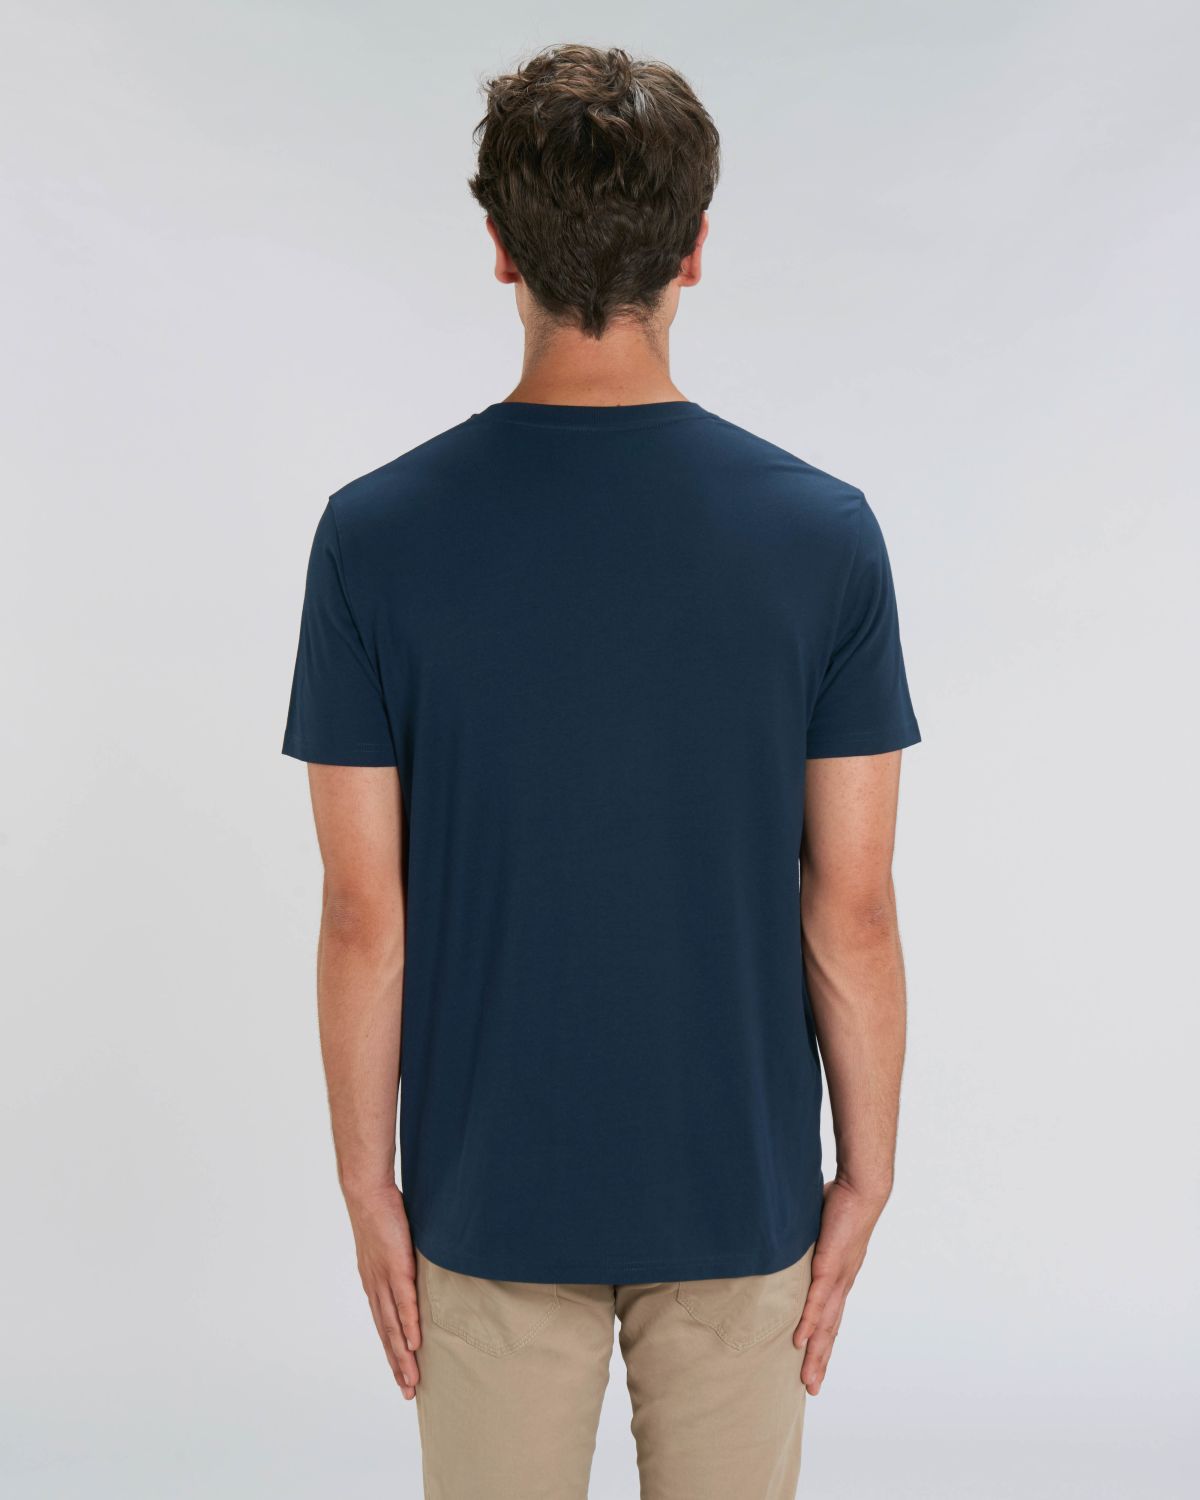 Connor Navy - T-Shirt Herren